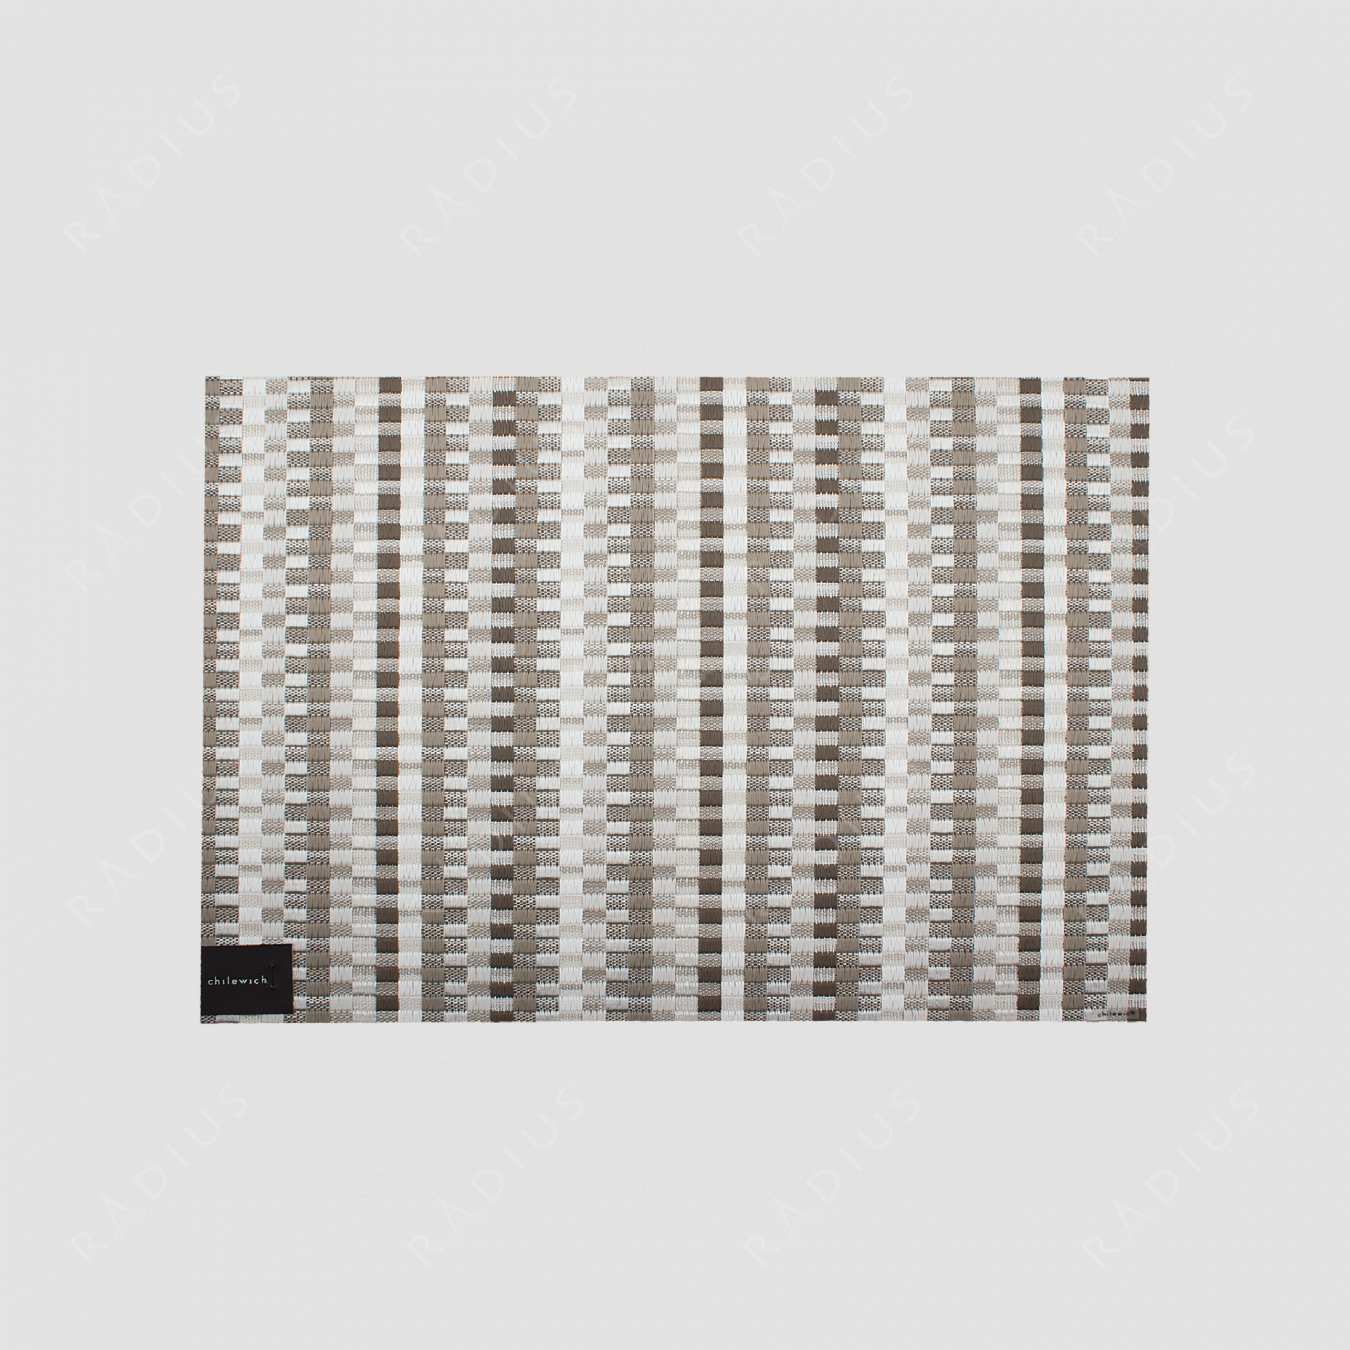 Салфетка подстановочная, жаккардовое плетение, винил, разм. 36х48, Pebble, серия Heddle, CHILEWICH, США